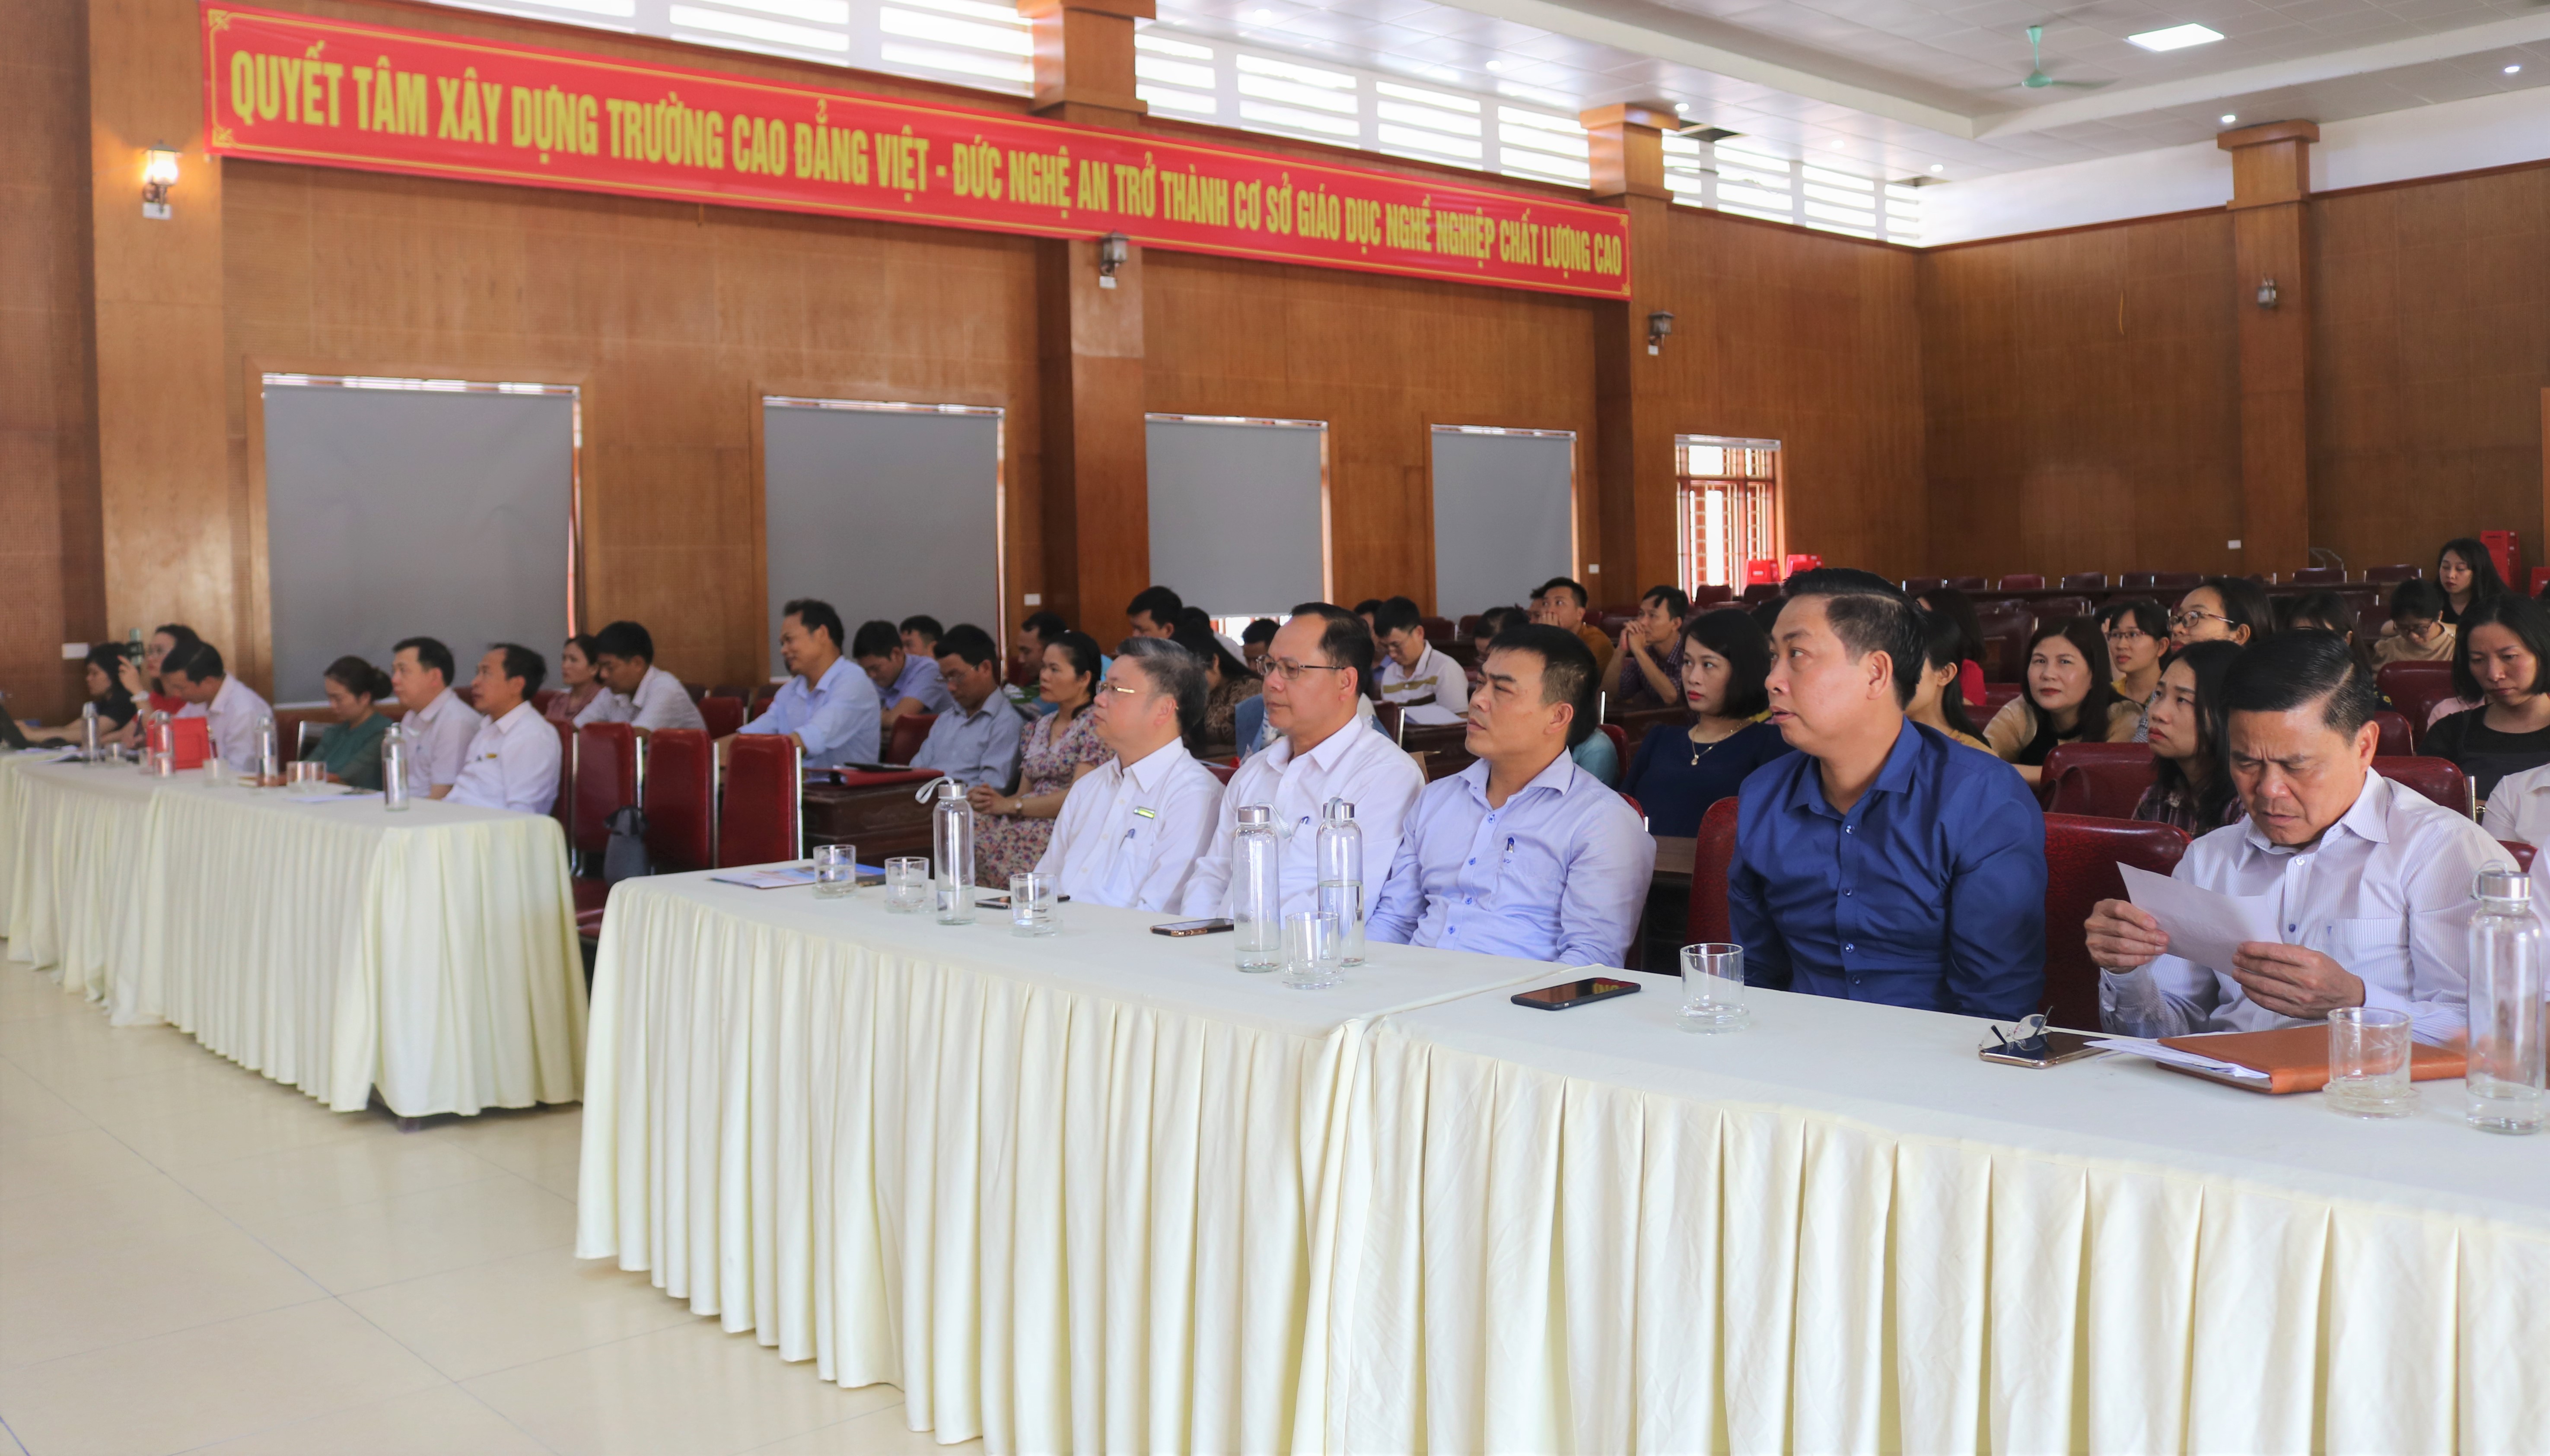 Chiều ngày 12/04/2021, Trường Cao đẳng Việt - Đức Nghệ An đã tổ chức Hội nghị học tập,quán triệt Nghị quyết Đại hội đại biểu toàn quốc lần thứ XIII của Đảng.